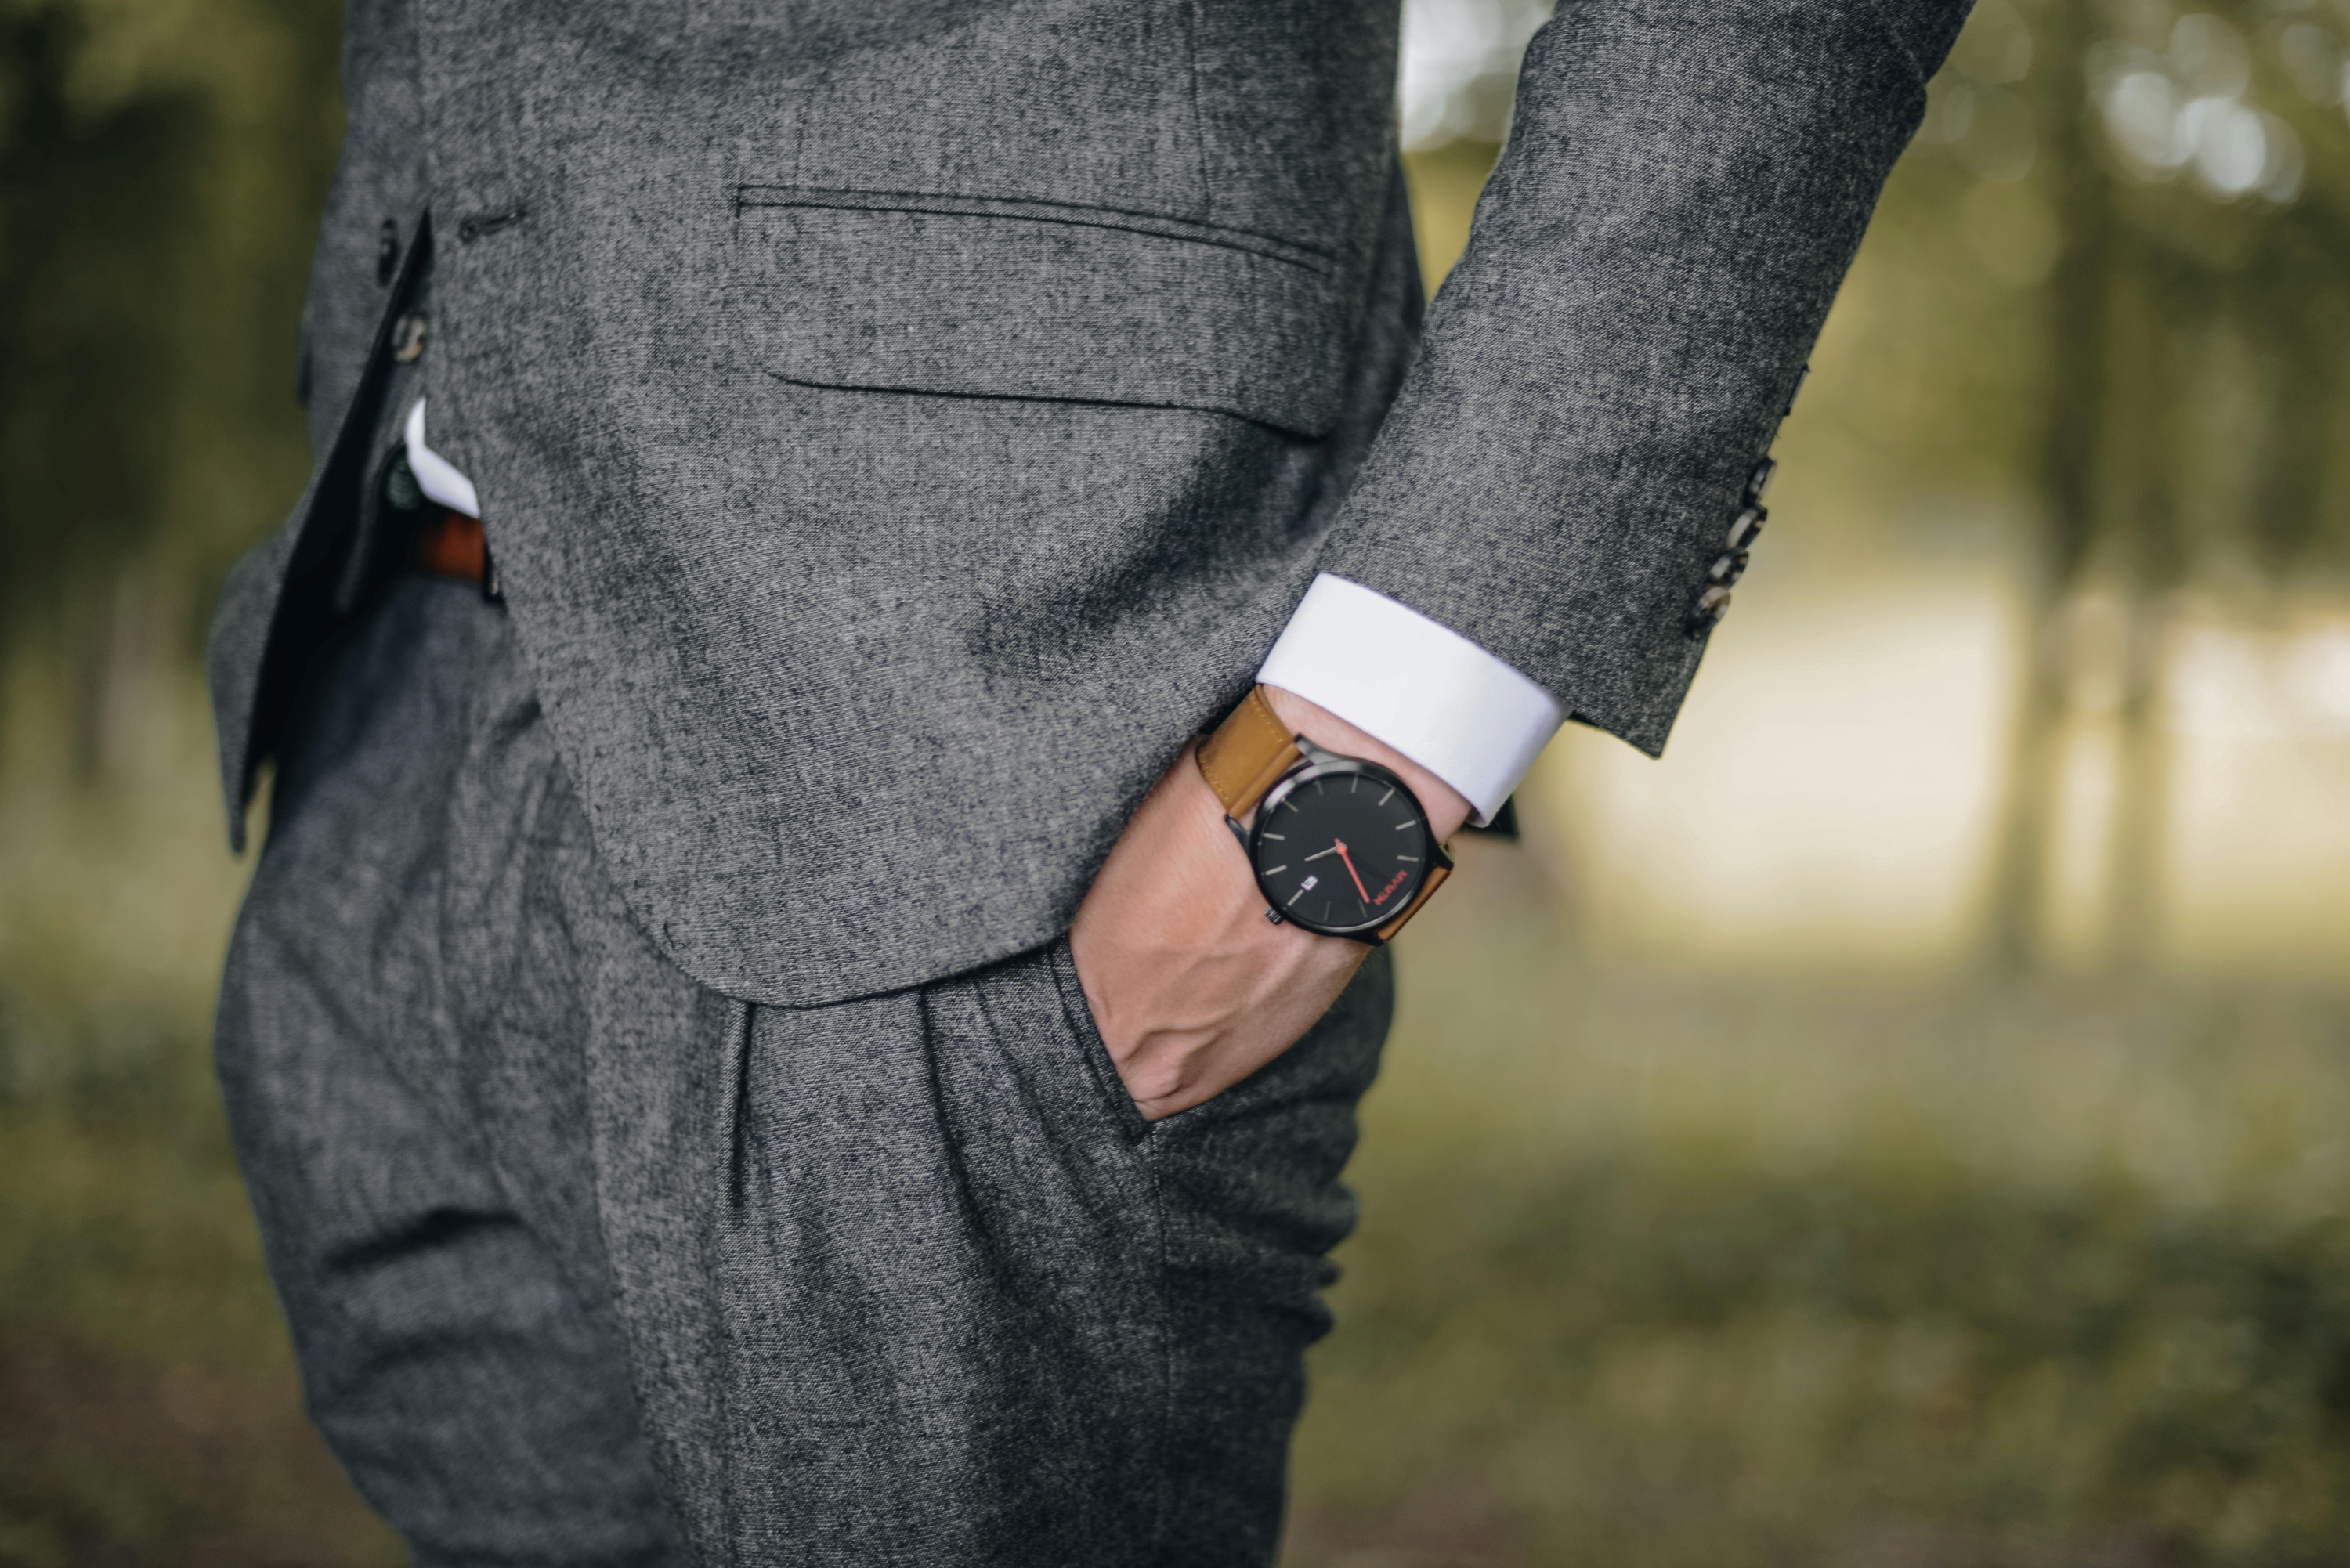 man in suit wearing a watch